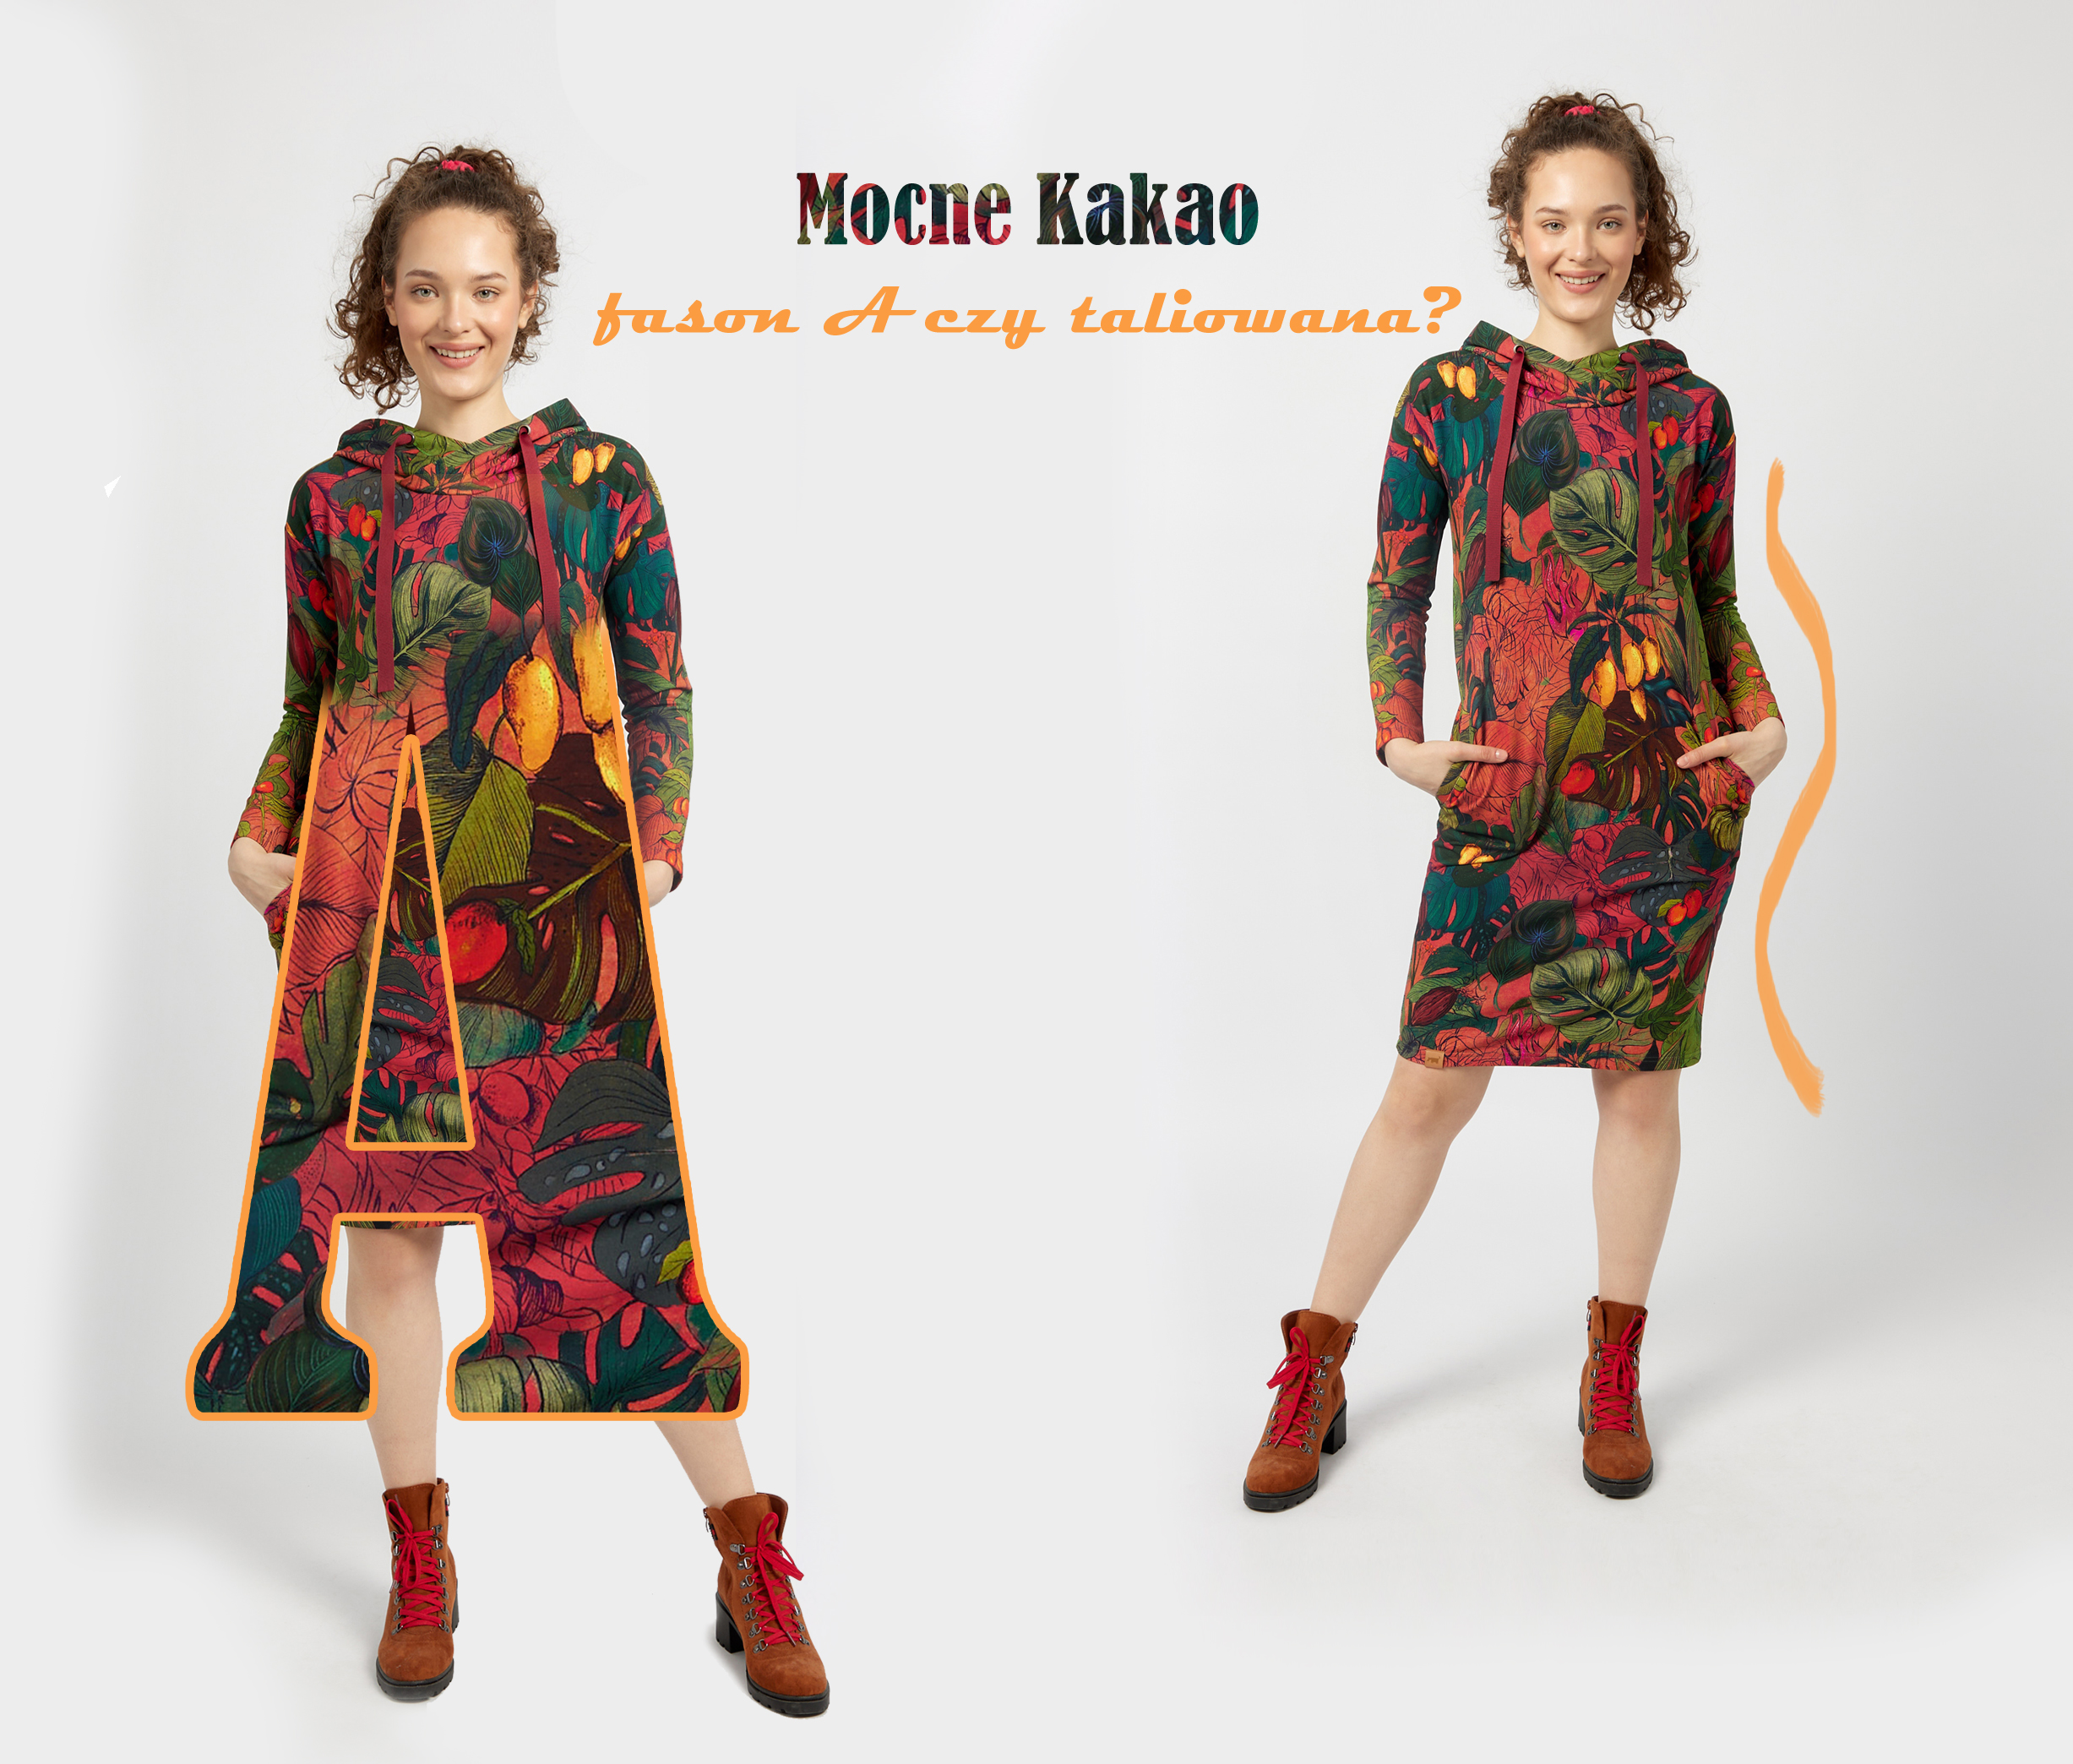 Mocne Kakao – sukienka taliowana czy fason A?